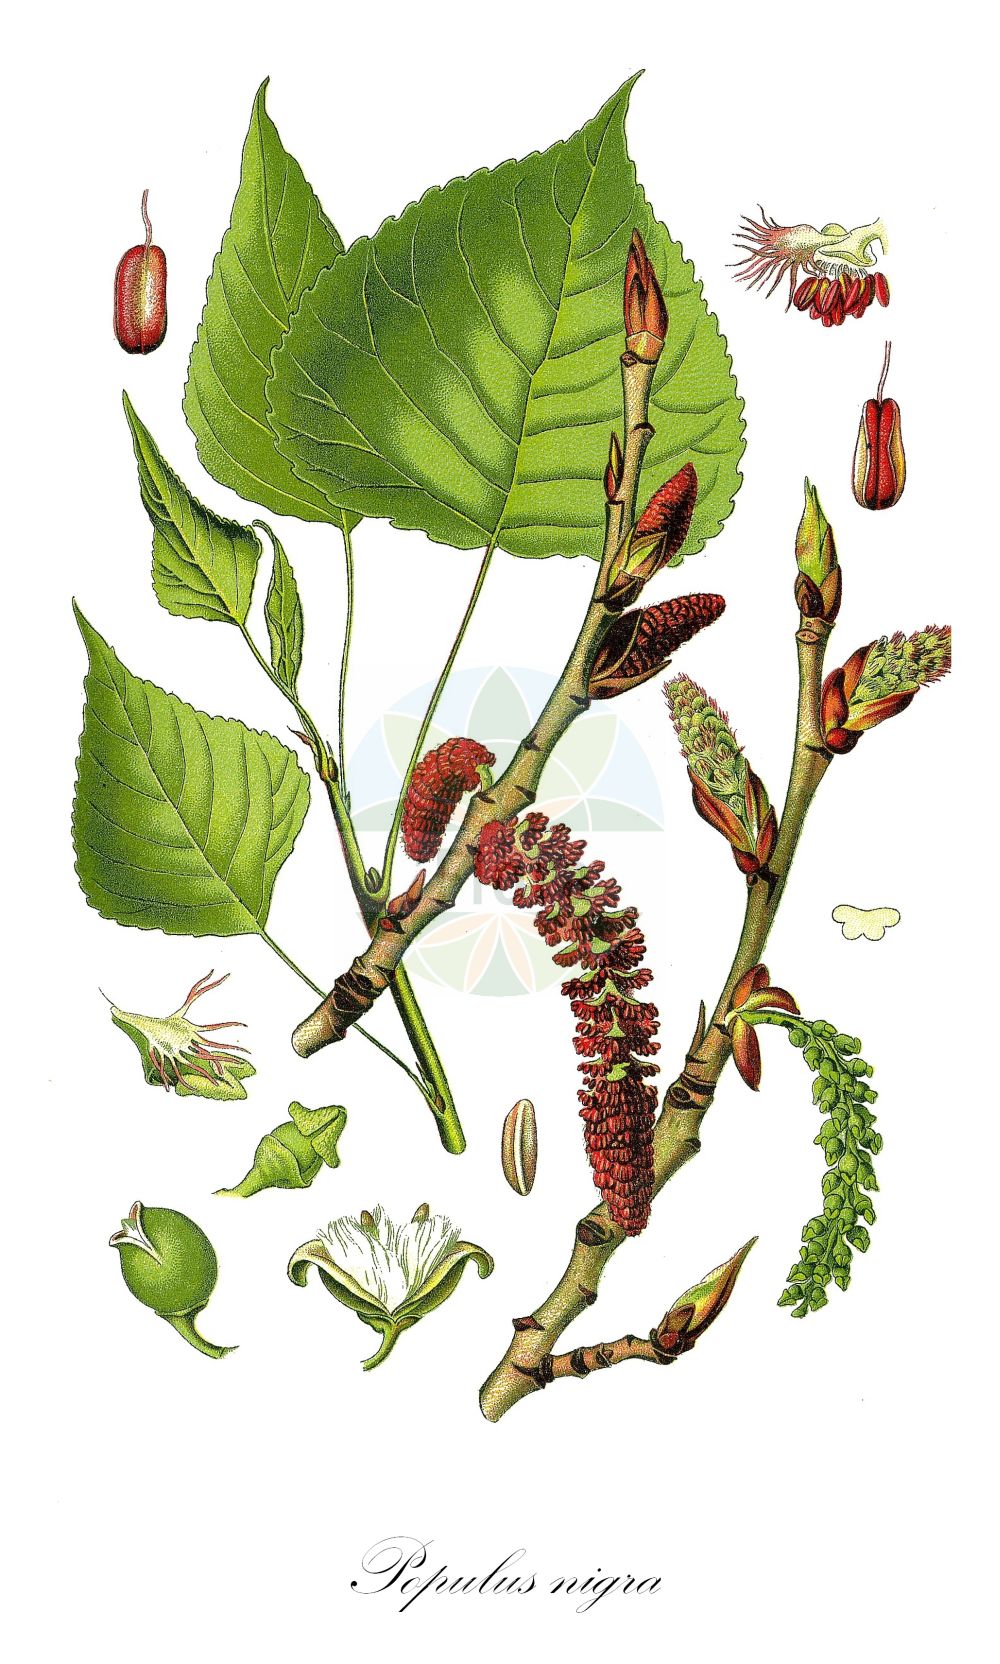 Historische Abbildung von Populus nigra (Schwarz-Pappel - Black-poplar). ---- Historical Drawing of Populus nigra (Schwarz-Pappel - Black-poplar).(Populus nigra,Schwarz-Pappel,Black-poplar,Populus nigra,Schwarz-Pappel,Birkenblaettrige Schwarzpappel,Sarbaum,Black-poplar,Lombardy Poplar,Populus,Pappel,Poplar,Salicaceae,Weidengewächse,Willow family,Thomé (1885))